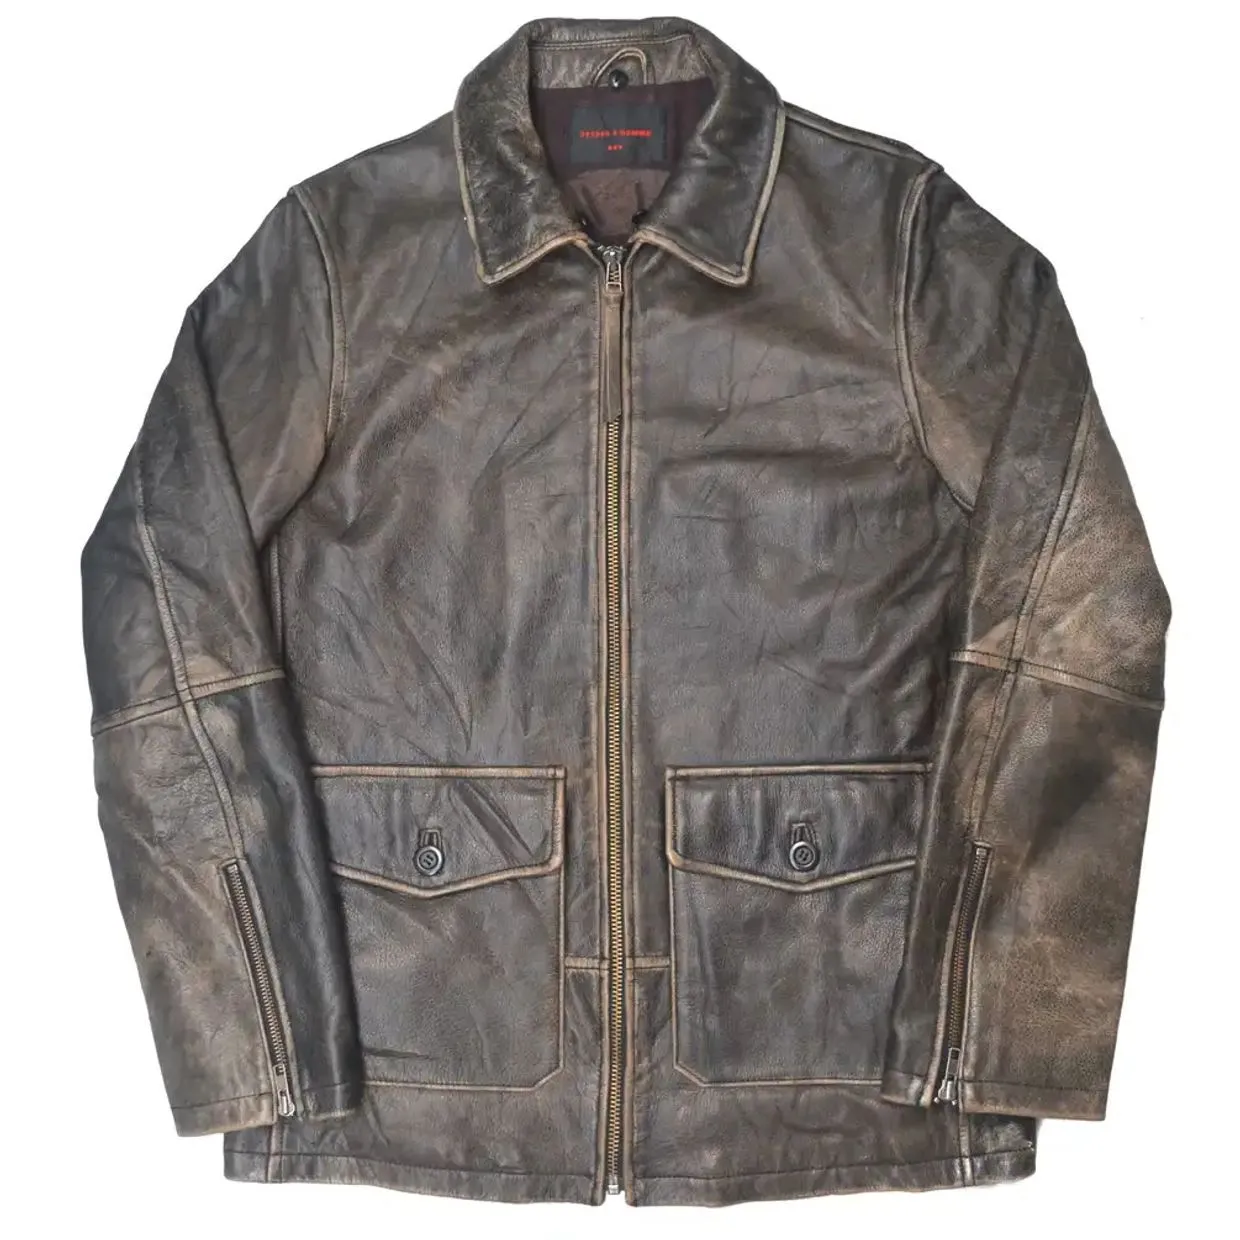 291295=HOMME Men's Gray & Black Leather Jacket - Preloved